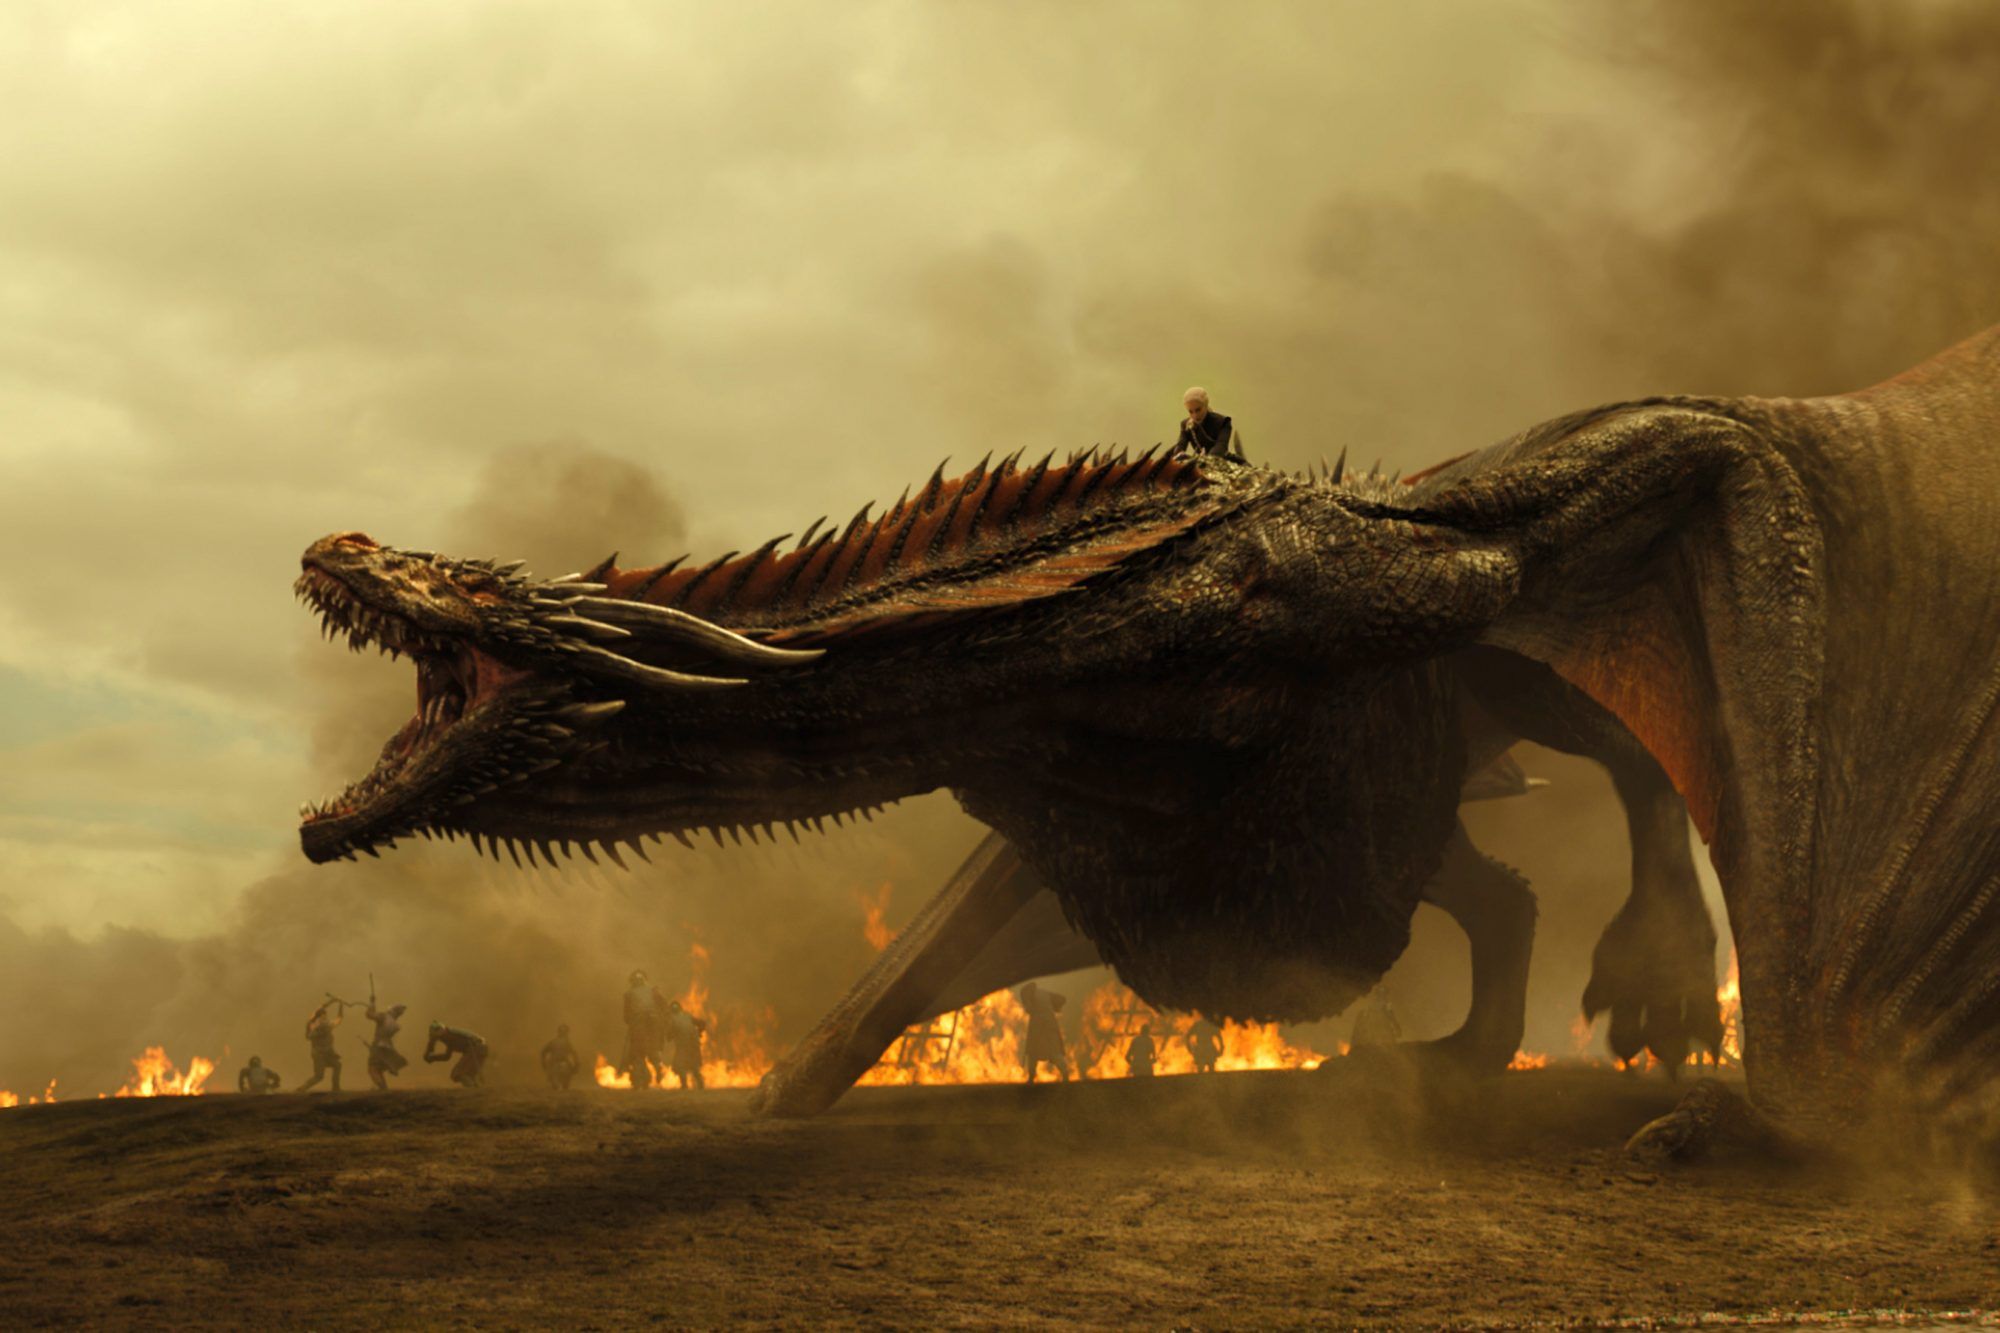 Game Of Thrones Targaryen House Dragon Wallpapers